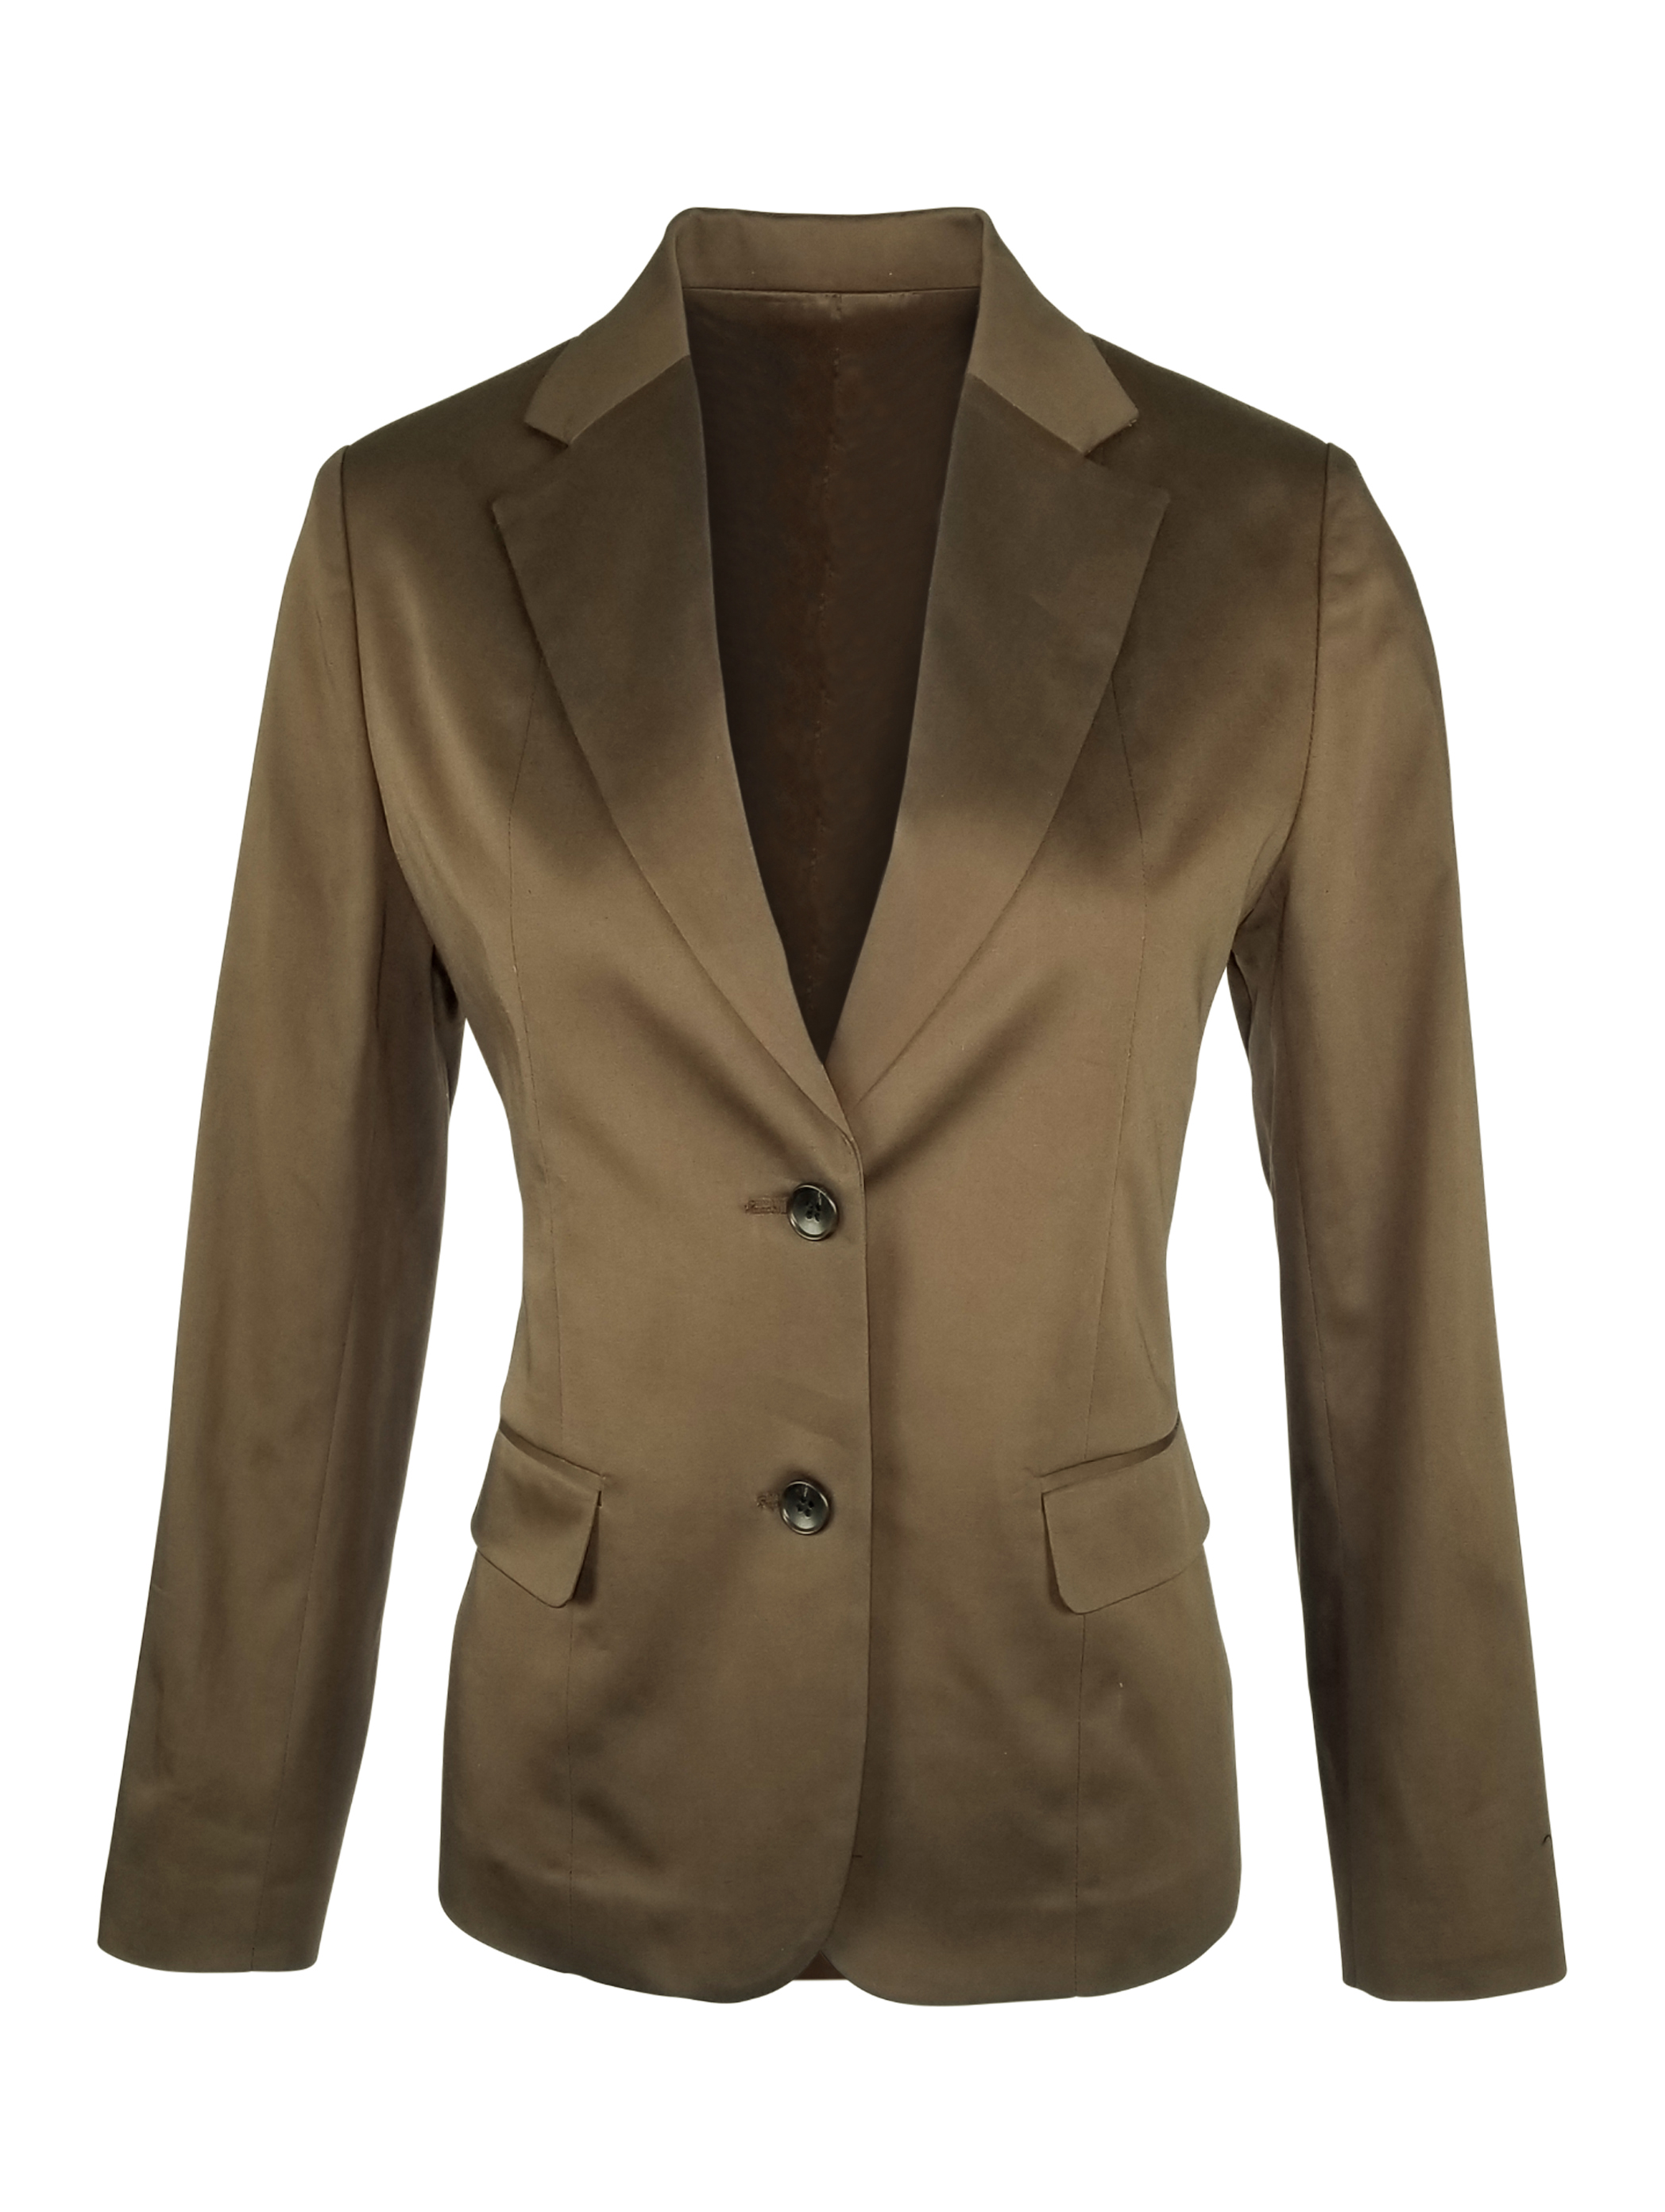 Women's Cotton Jacket - Brown - Uniform Edit